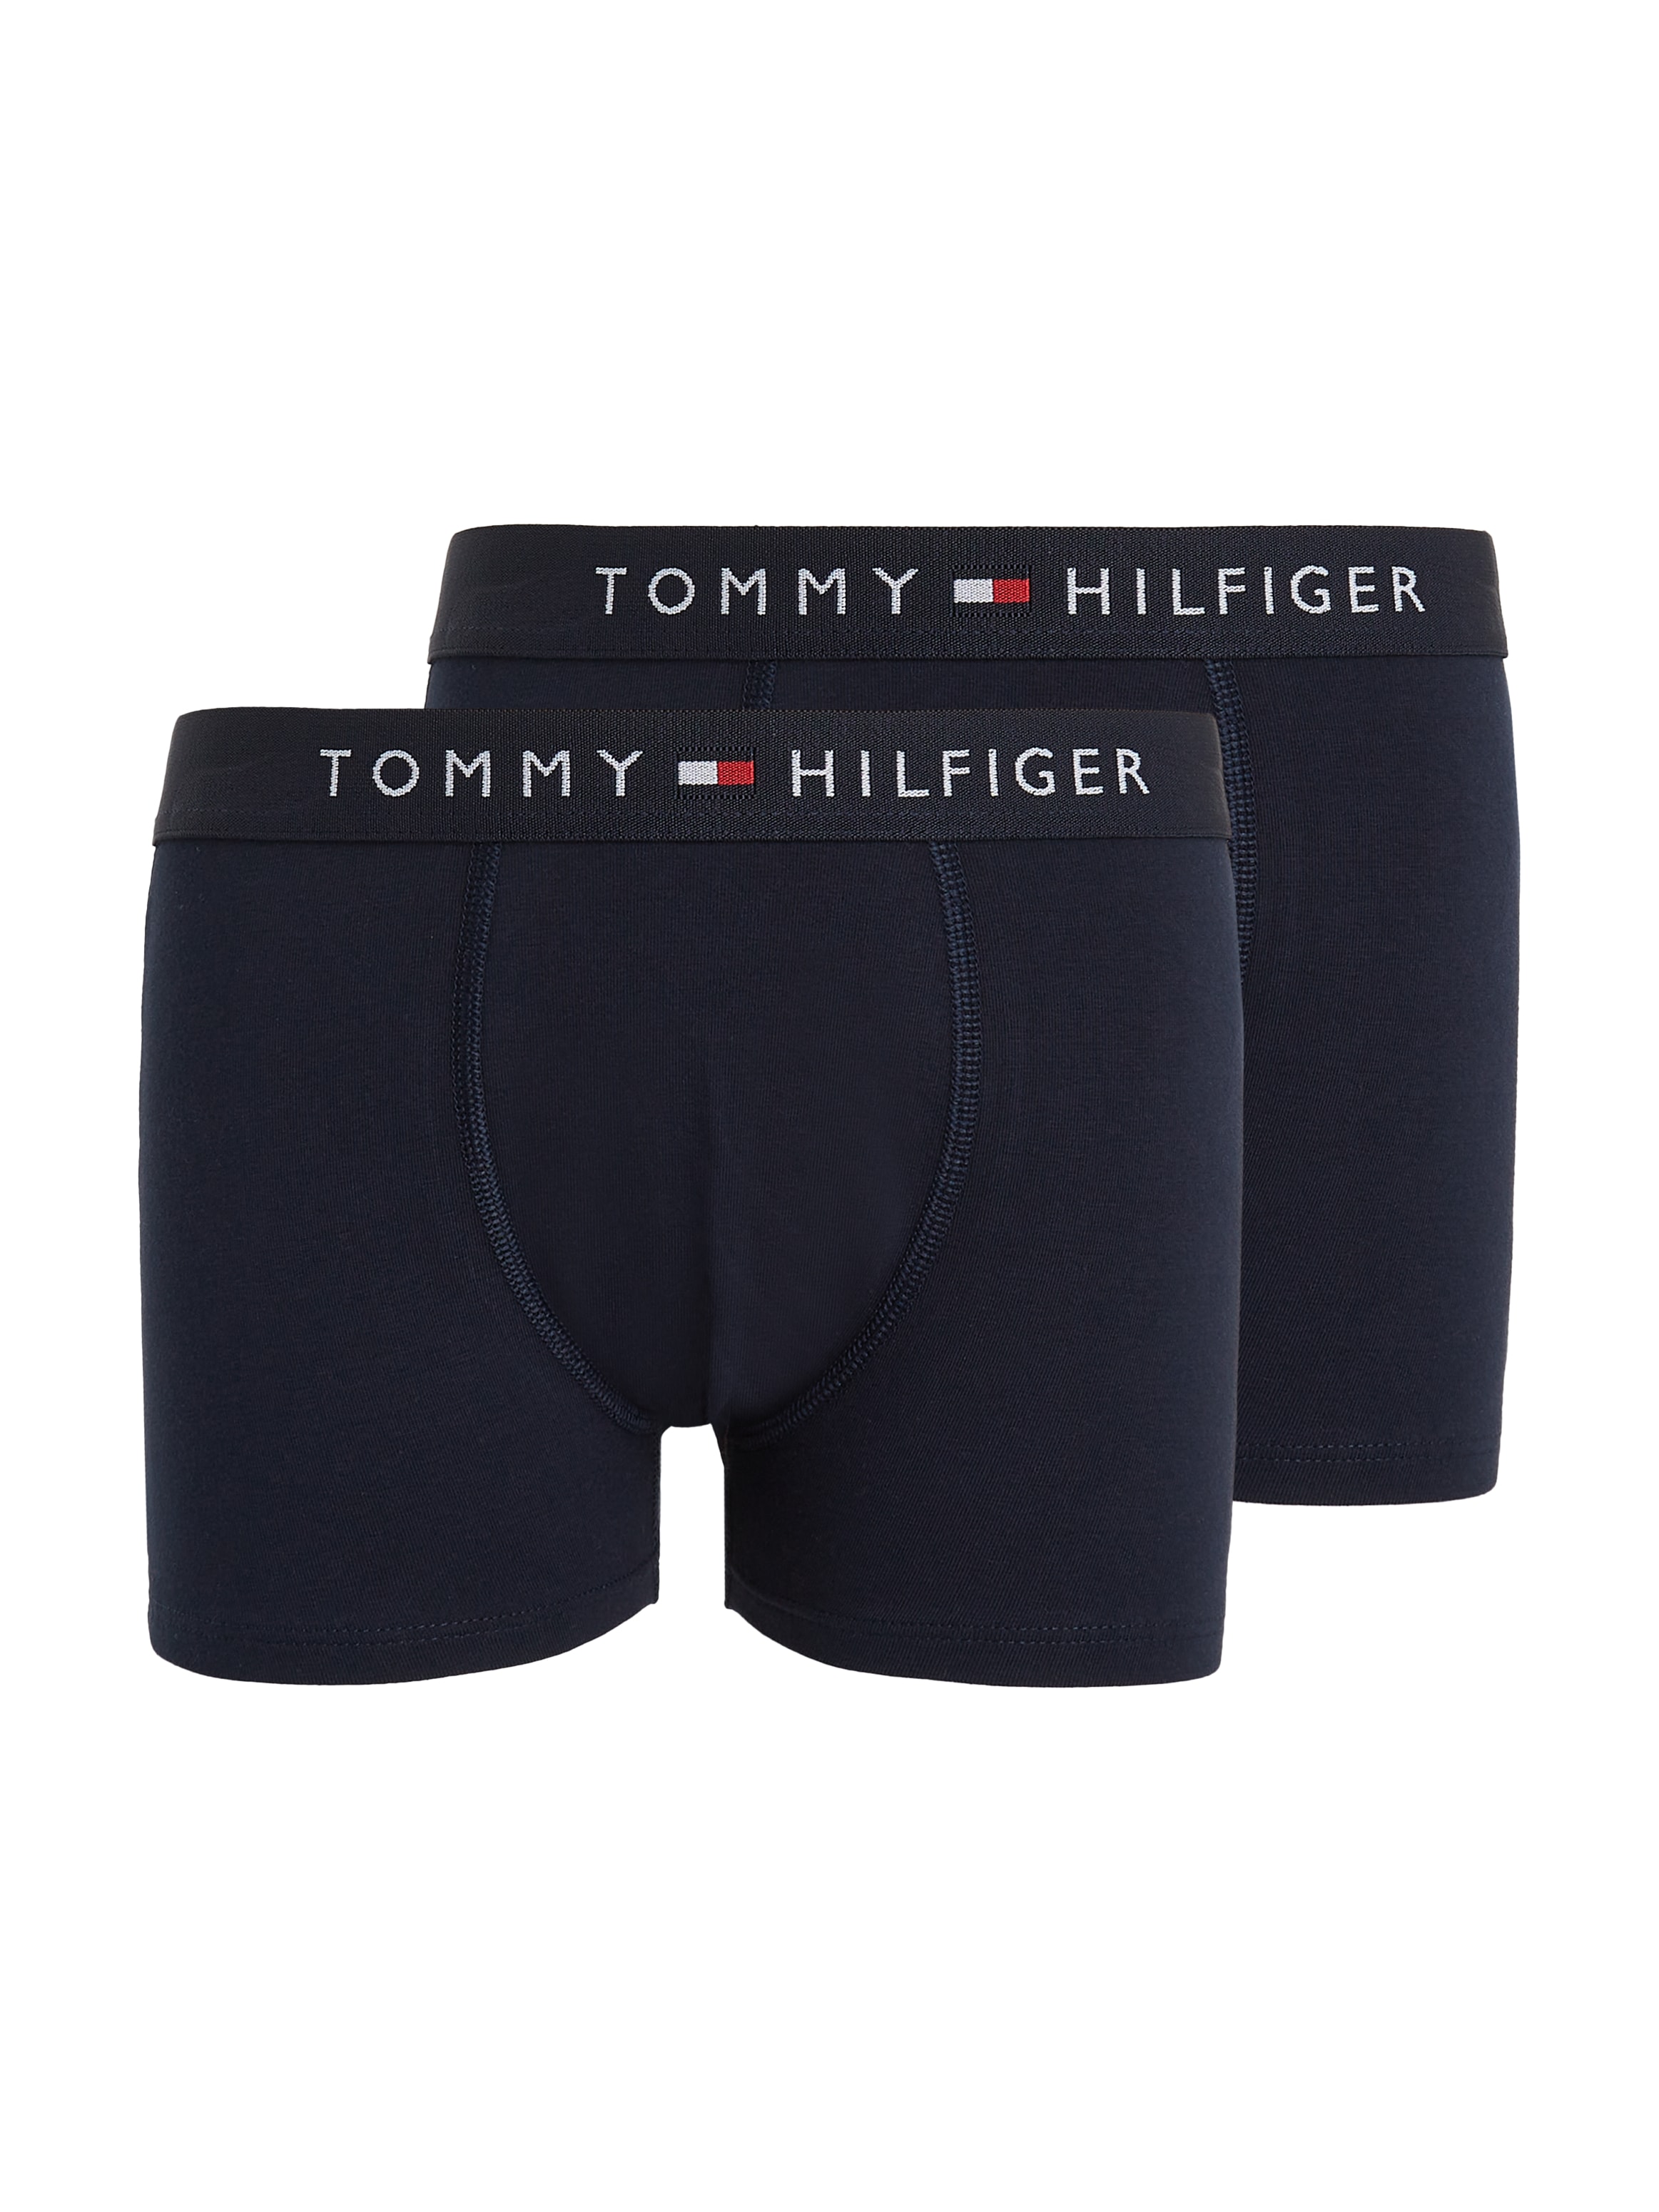 Tommy Hilfiger Underwear Trunk, online St., Taillenbund mit auf bestellen dem 2er-Pack), Logo 2 (Packung